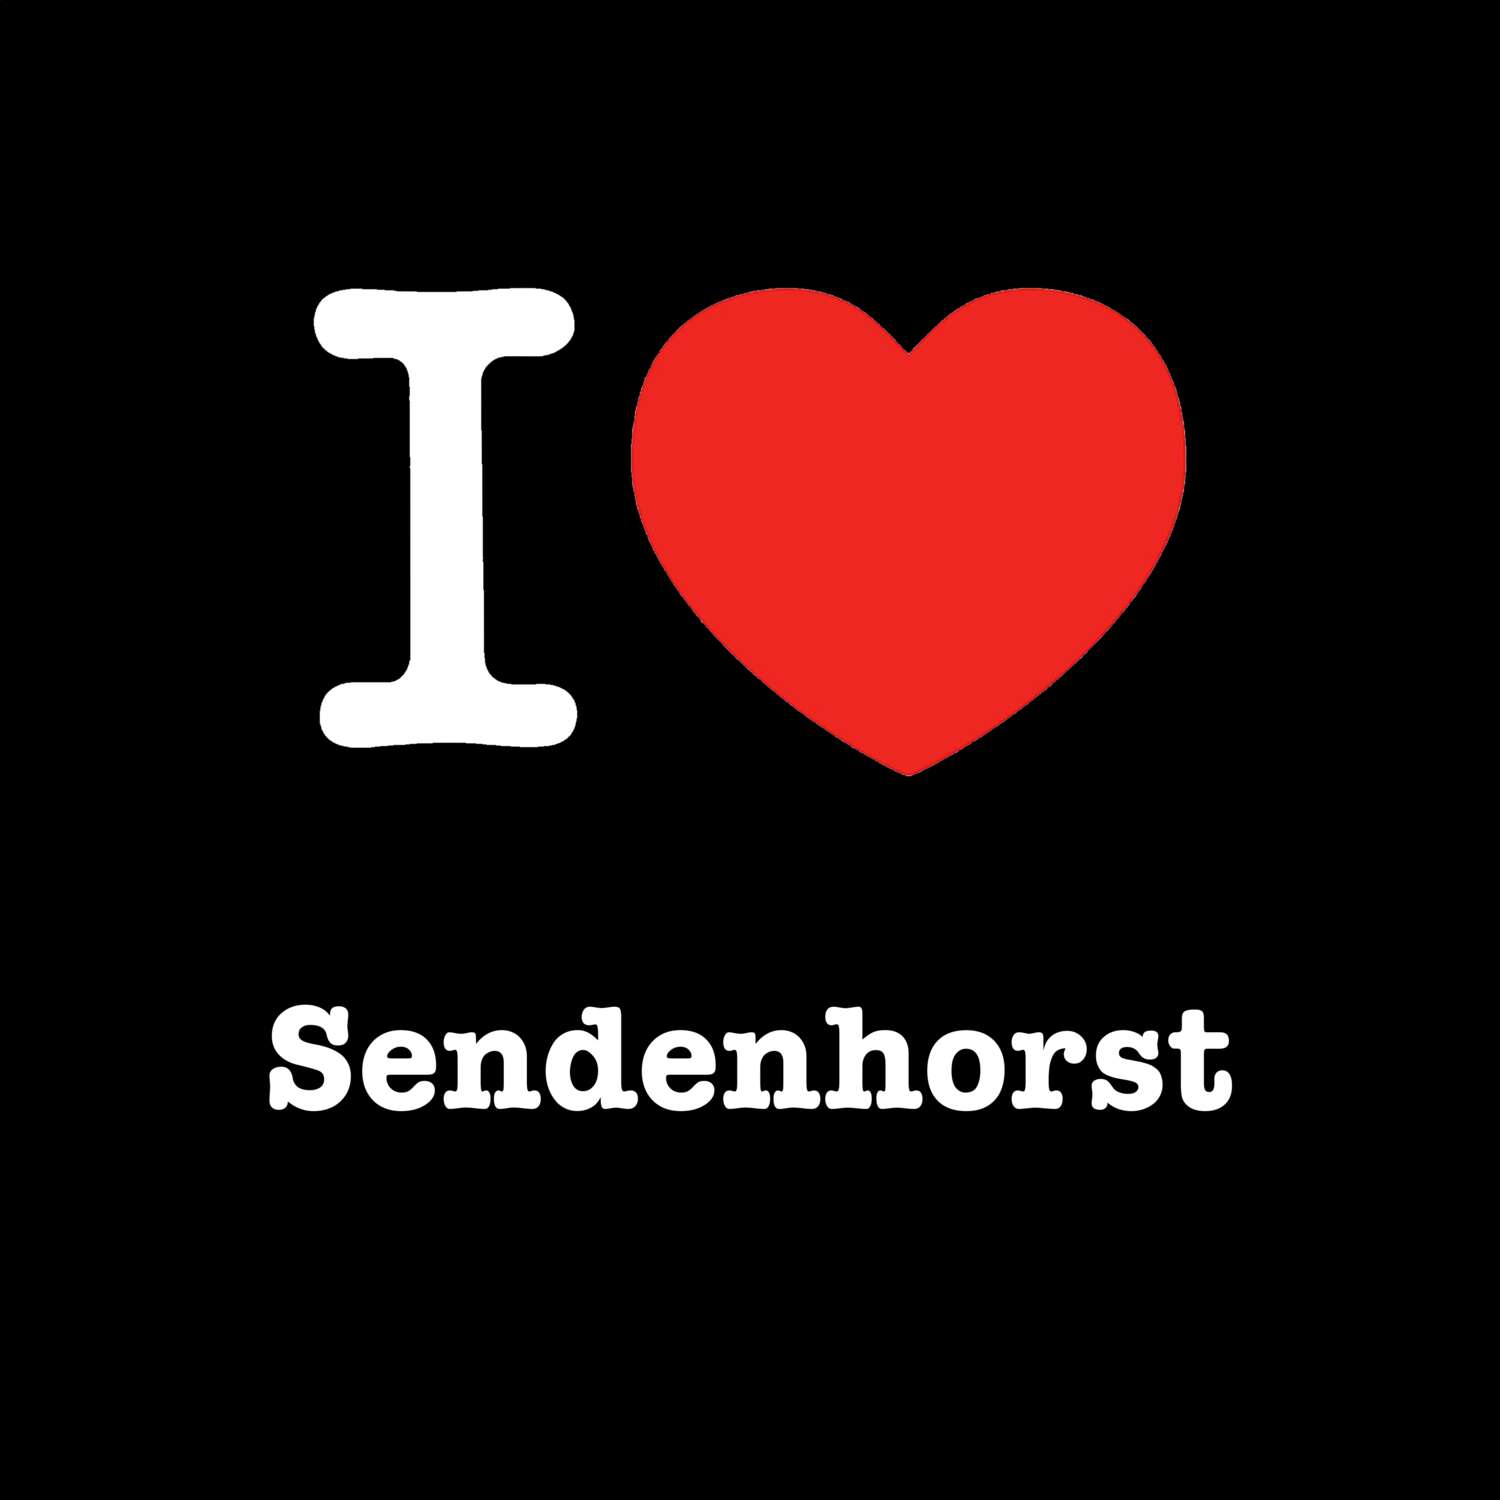 Sendenhorst T-Shirt »I love«